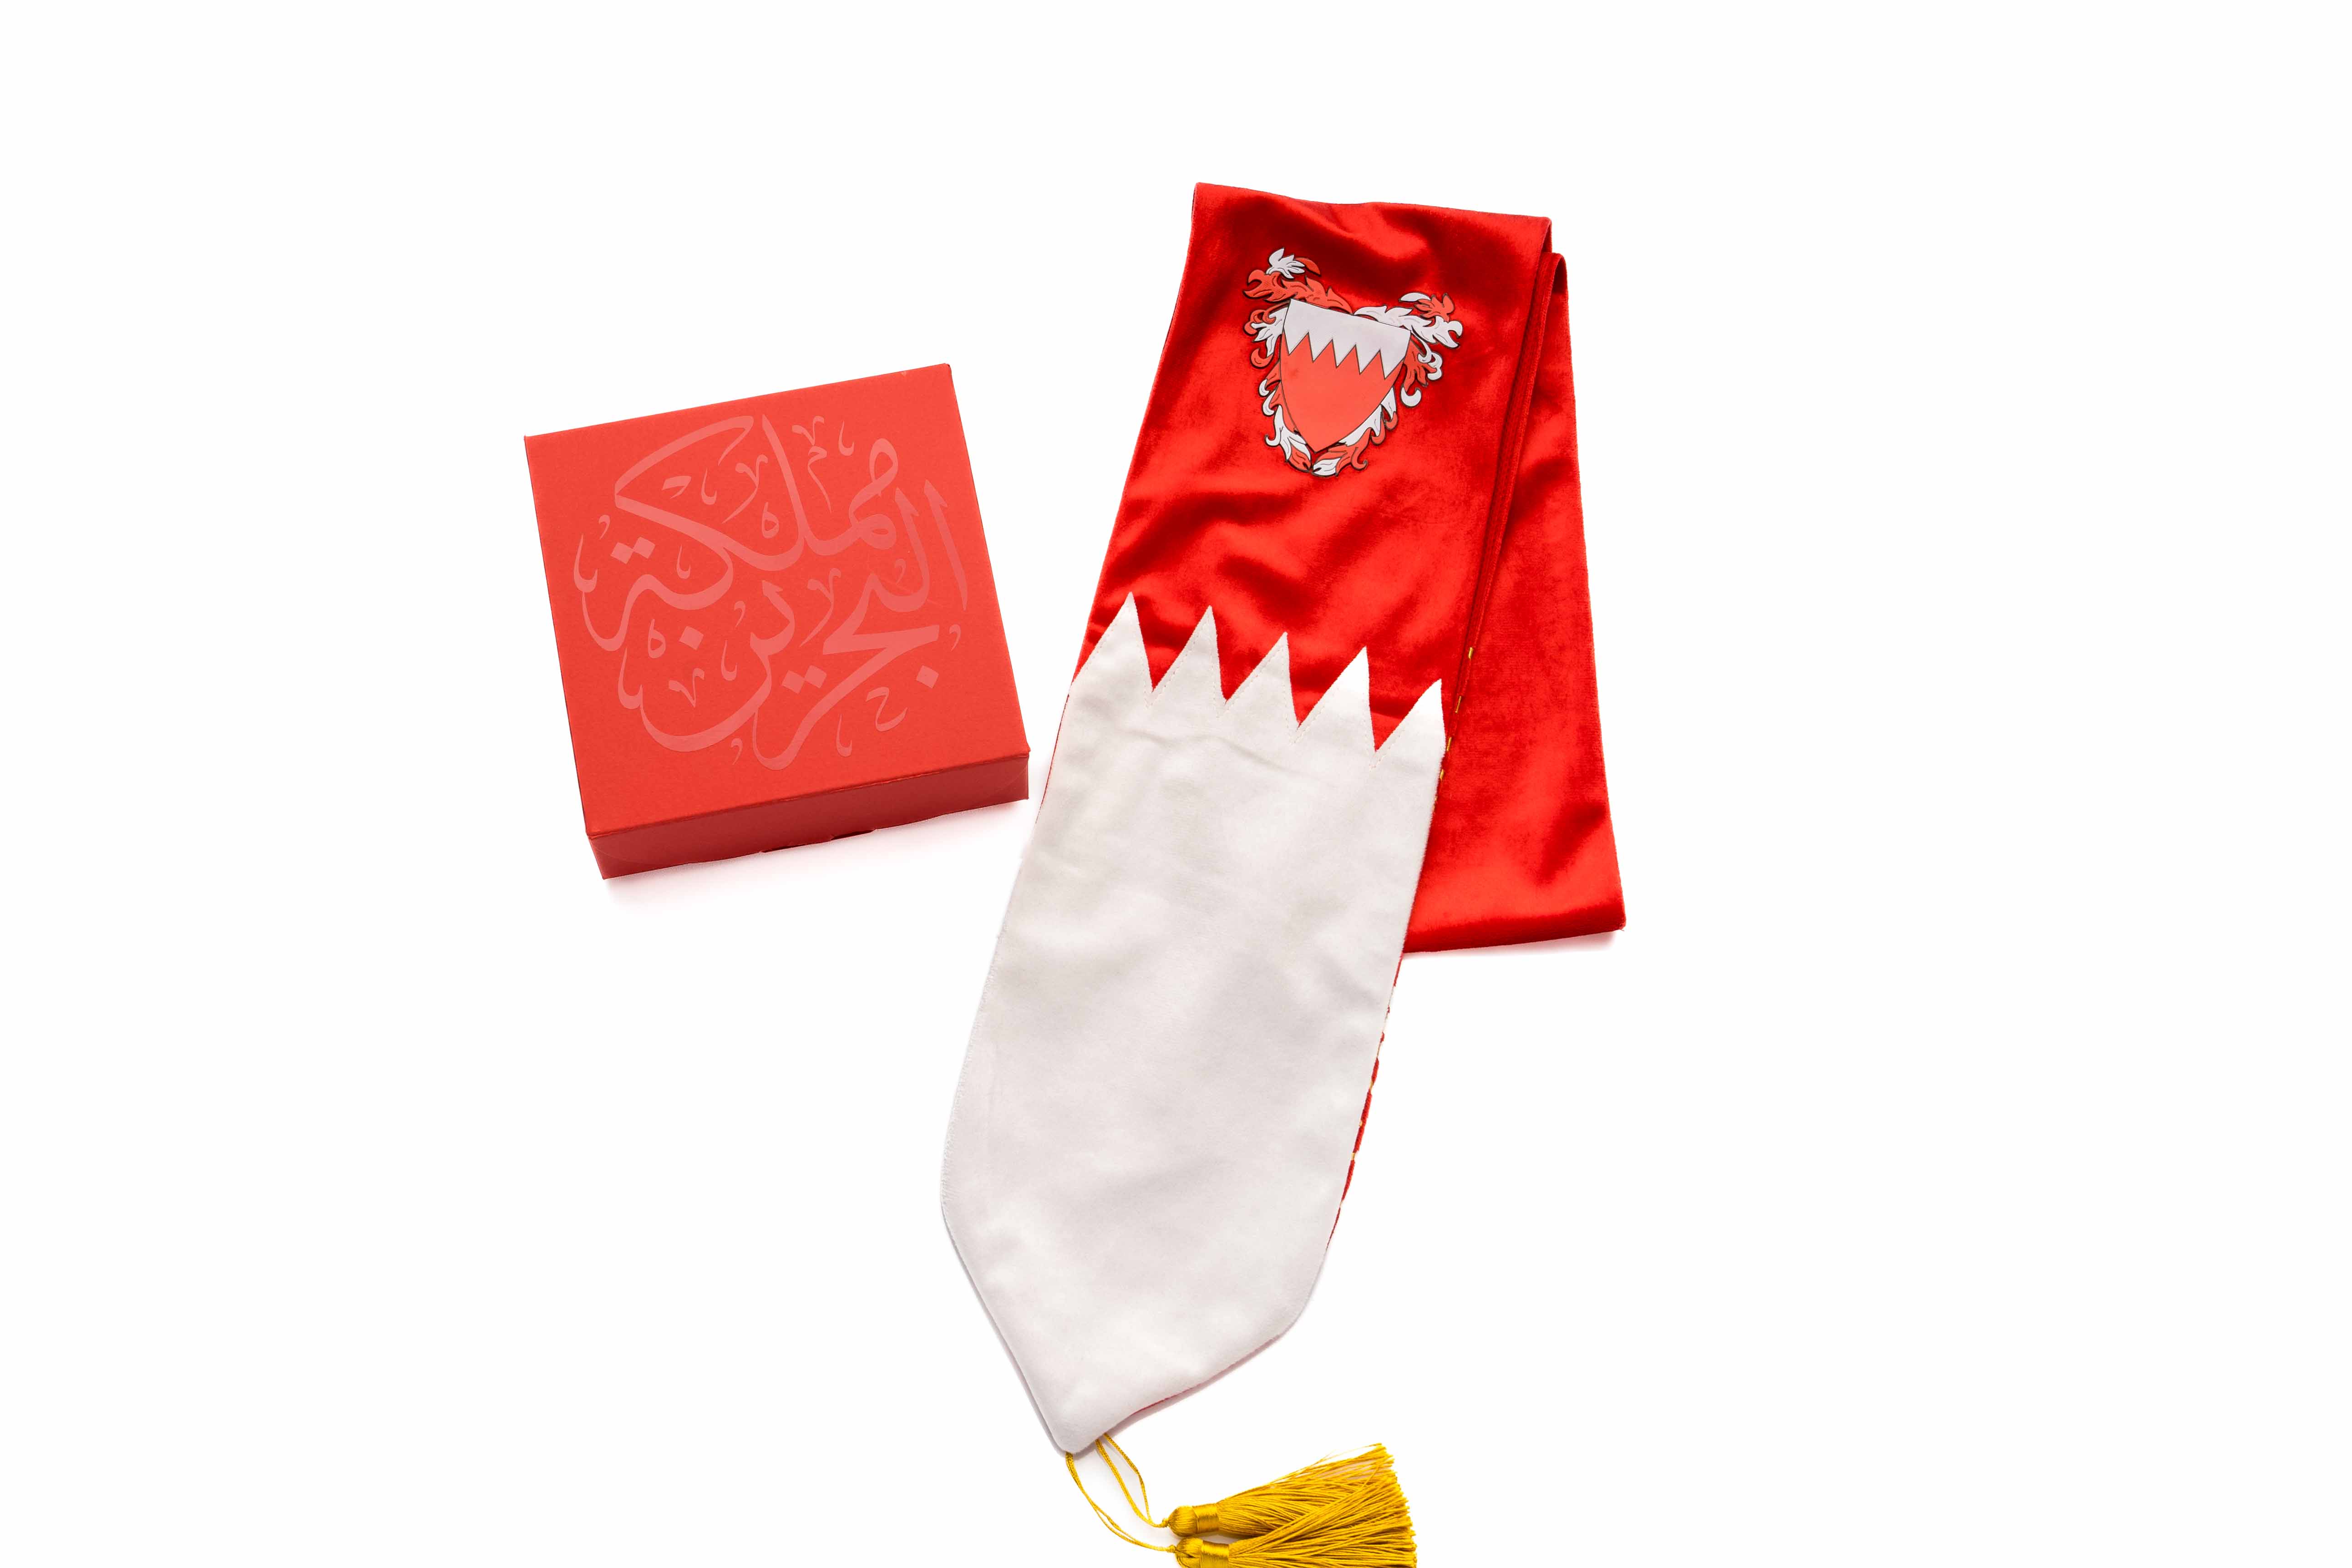 وشاح روفاتي البحرين اليوم الوطني 2021 أحمر